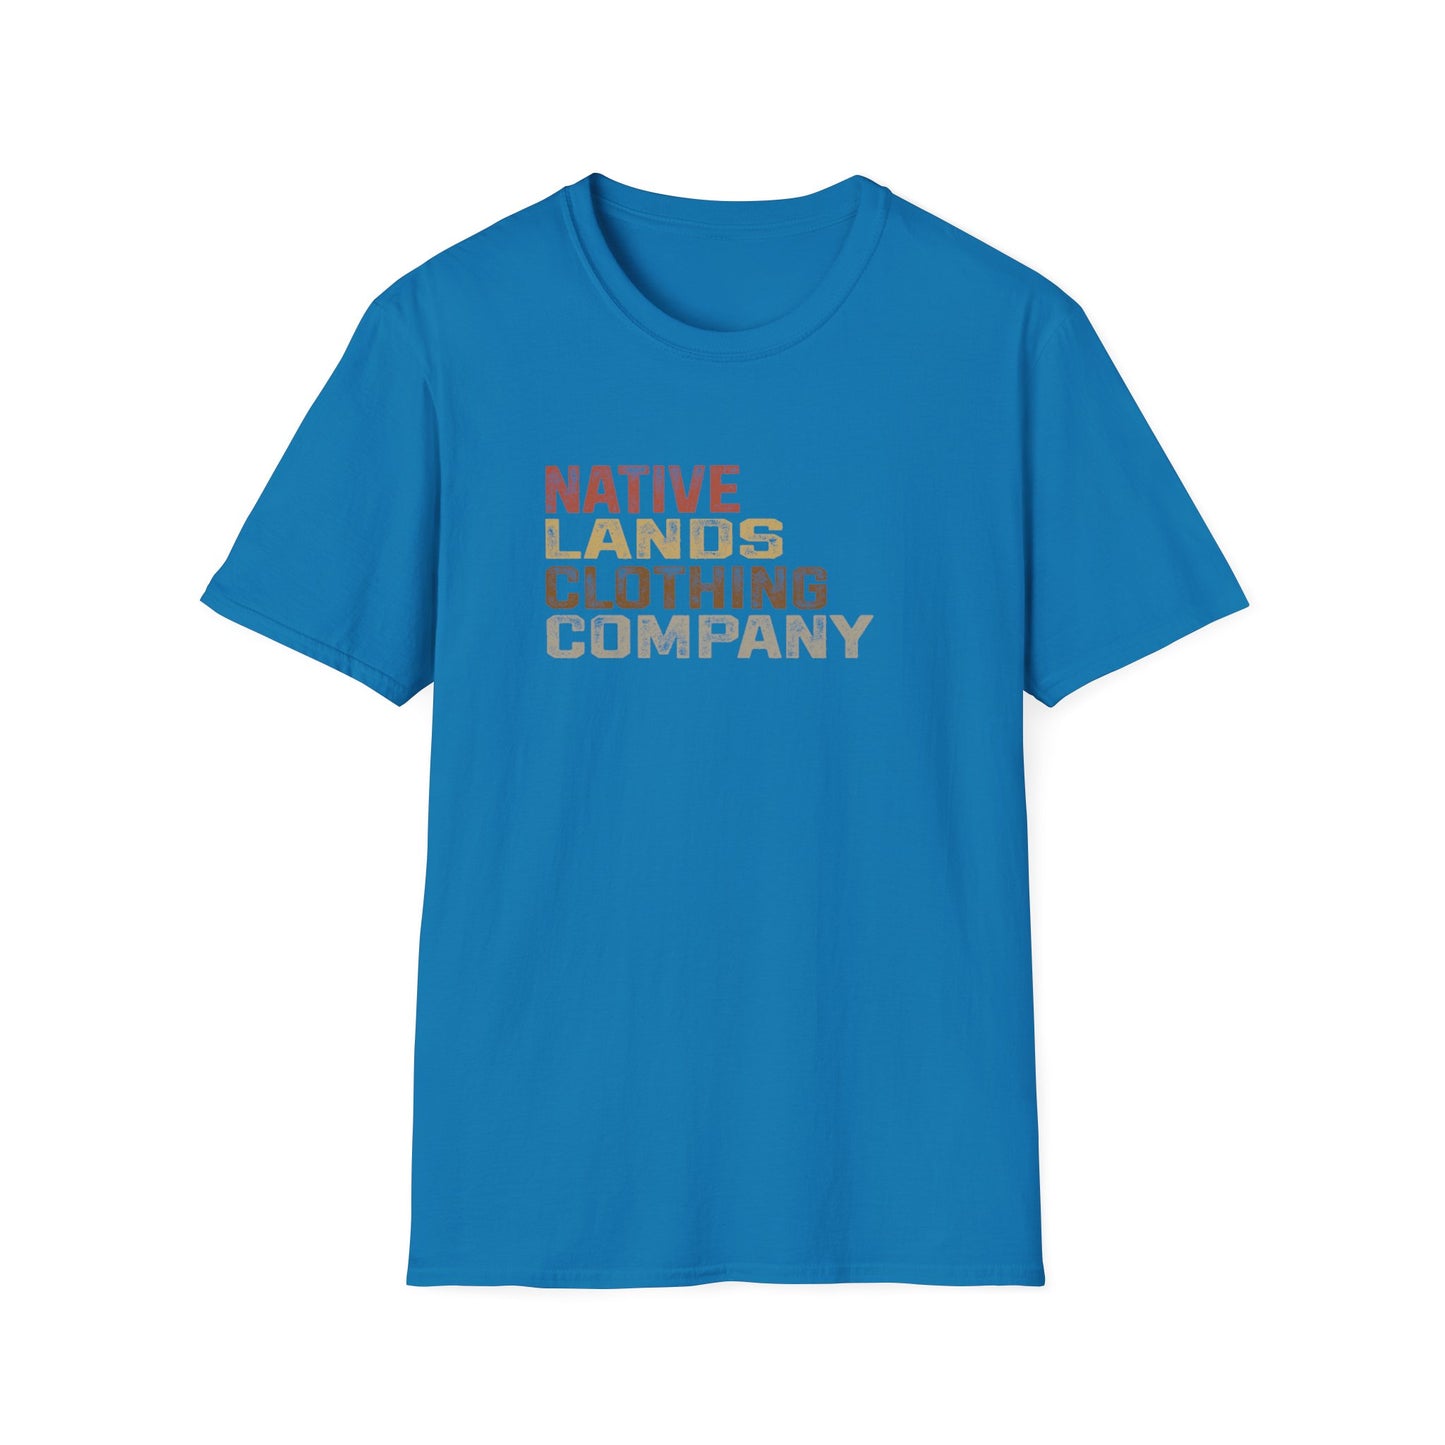 Native Lands Clothing Company Рубашка «Земля» из хлопка для коренных американцев